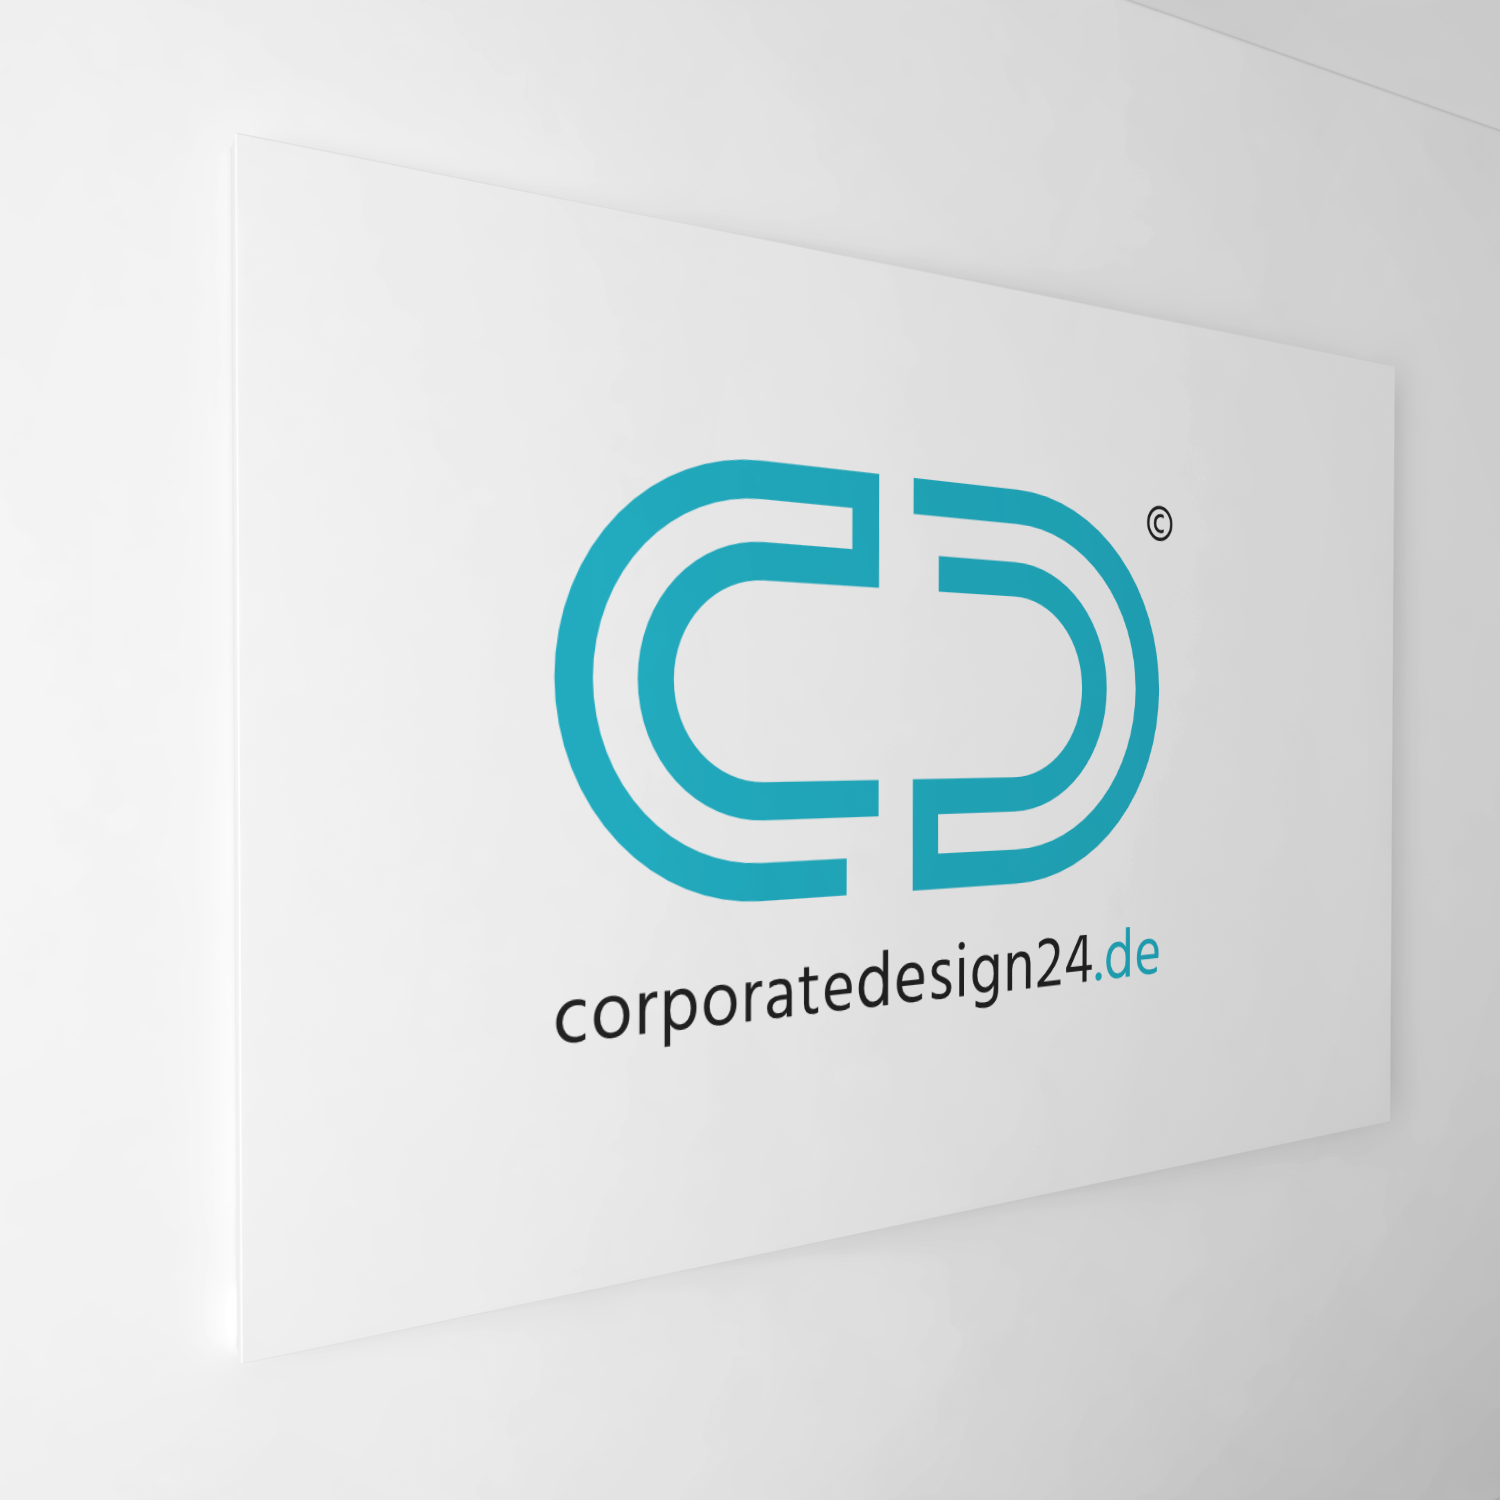 CorporateDesign24 - Wir gestalten ihr Logo und Corporate Design sowie alle Geschäftsunterlagen.